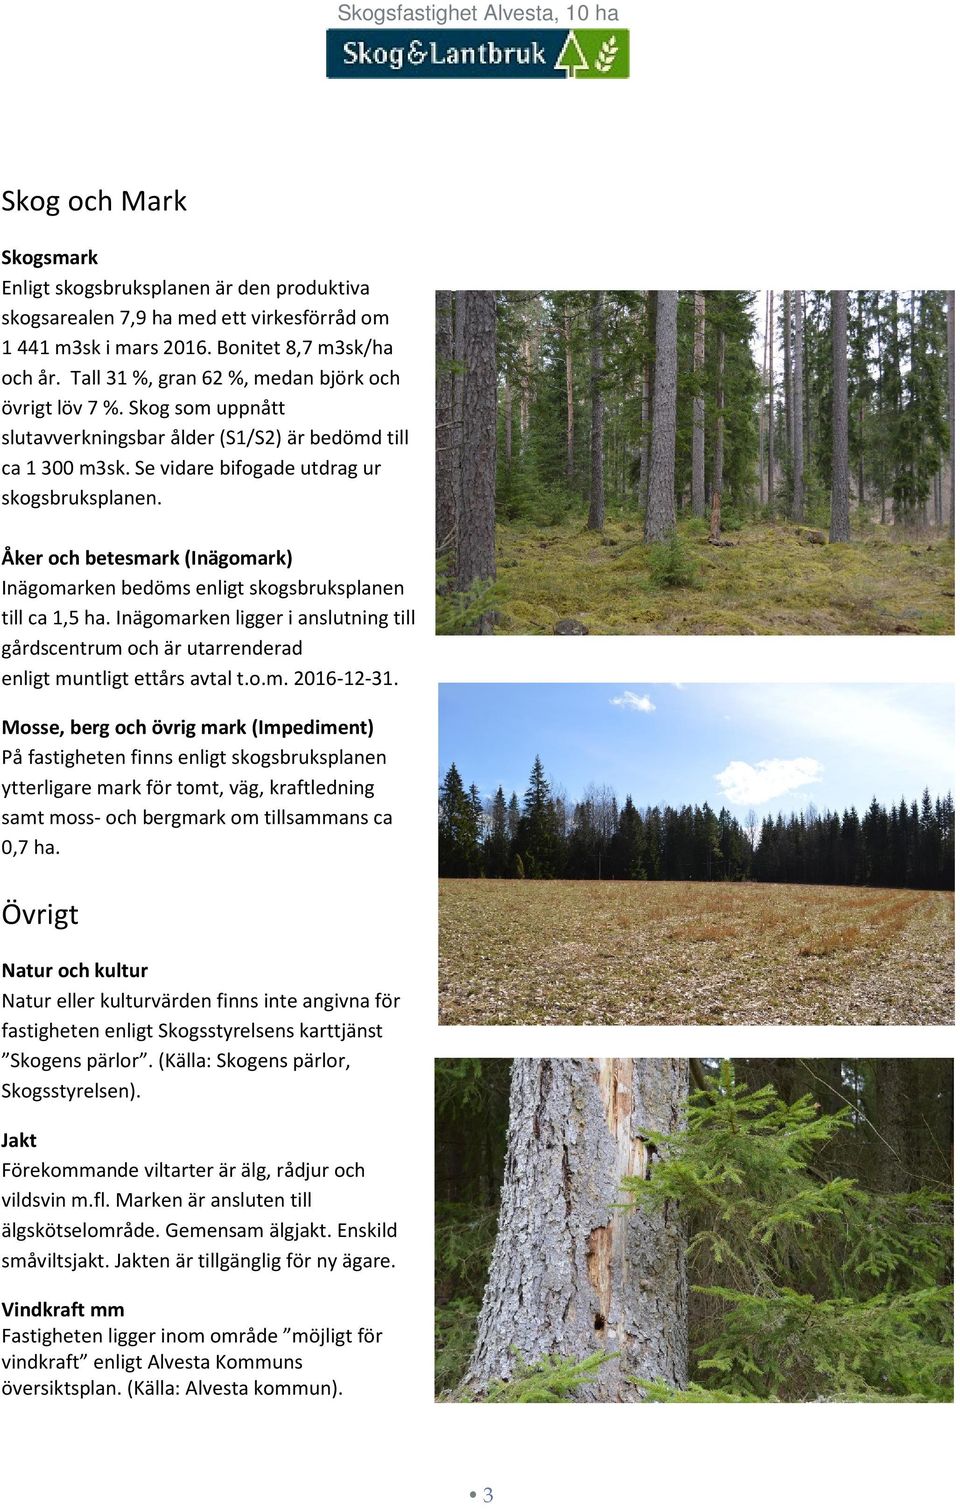 Åker och betesmark (Inägomark) Inägomarken bedöms enligt skogsbruksplanen till ca 1,5 ha. Inägomarken ligger i anslutning till gårdscentrum och är utarrenderad enligt muntligt ettårs avtal t.o.m. 2016-12-31.